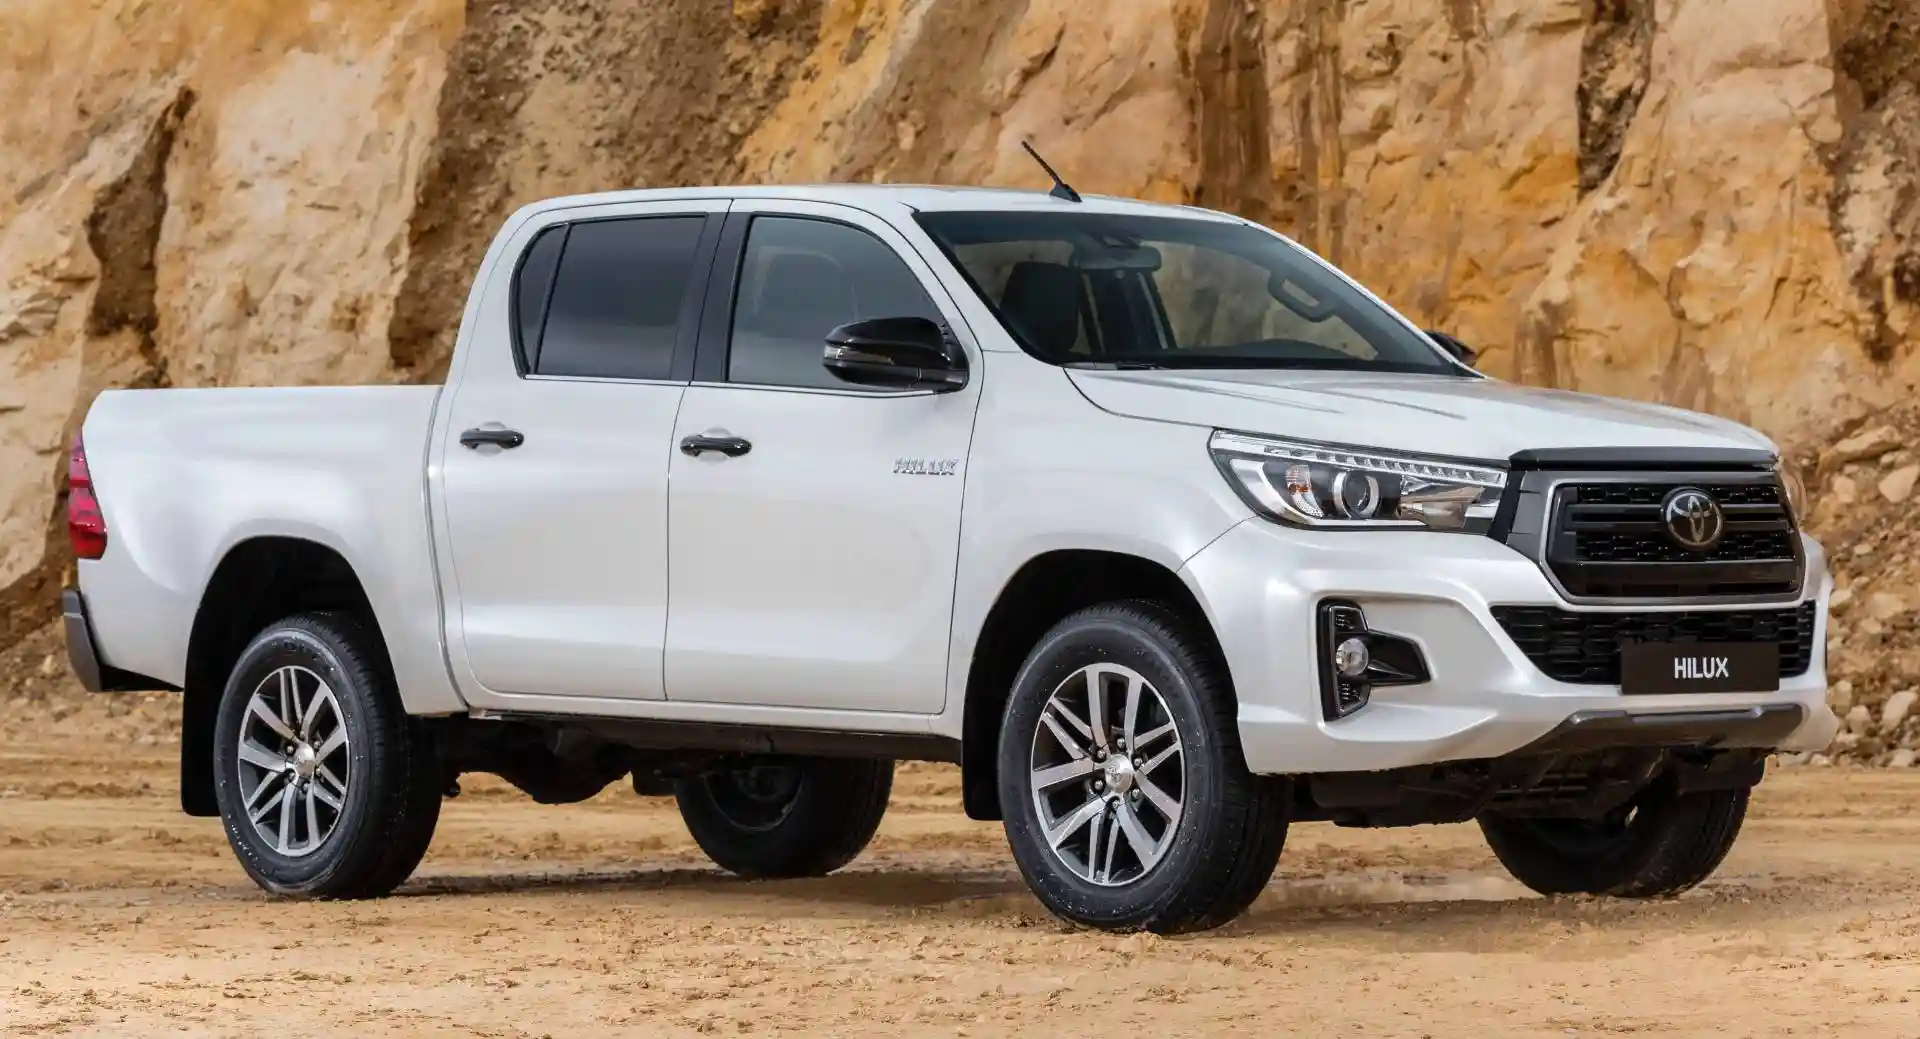 Toyota Hilux 2019 Price in Nigeria